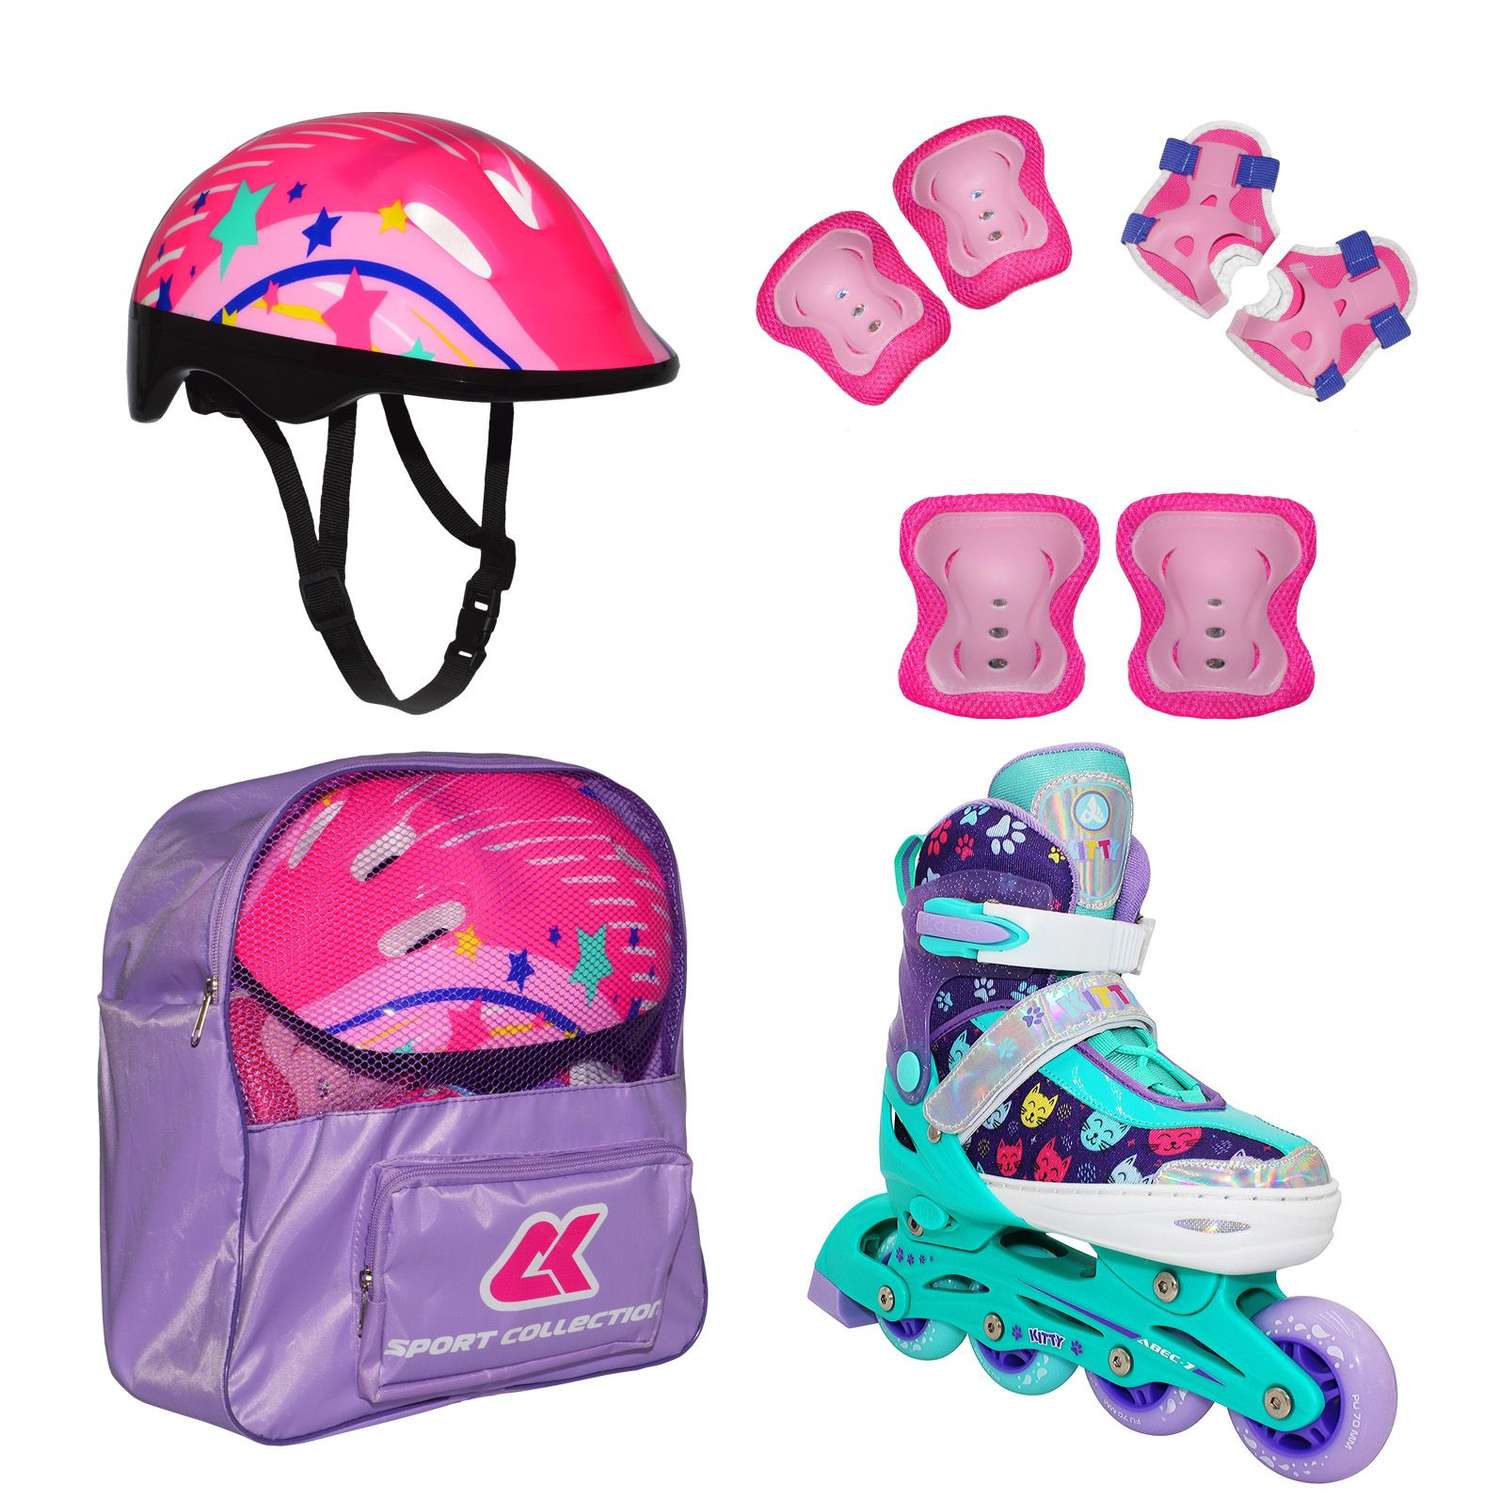 Набор роликовые коньки Sport Collection раздвижные Set Kitty Mint шлем и набор защиты в сумке размер S 29-32 - фото 1